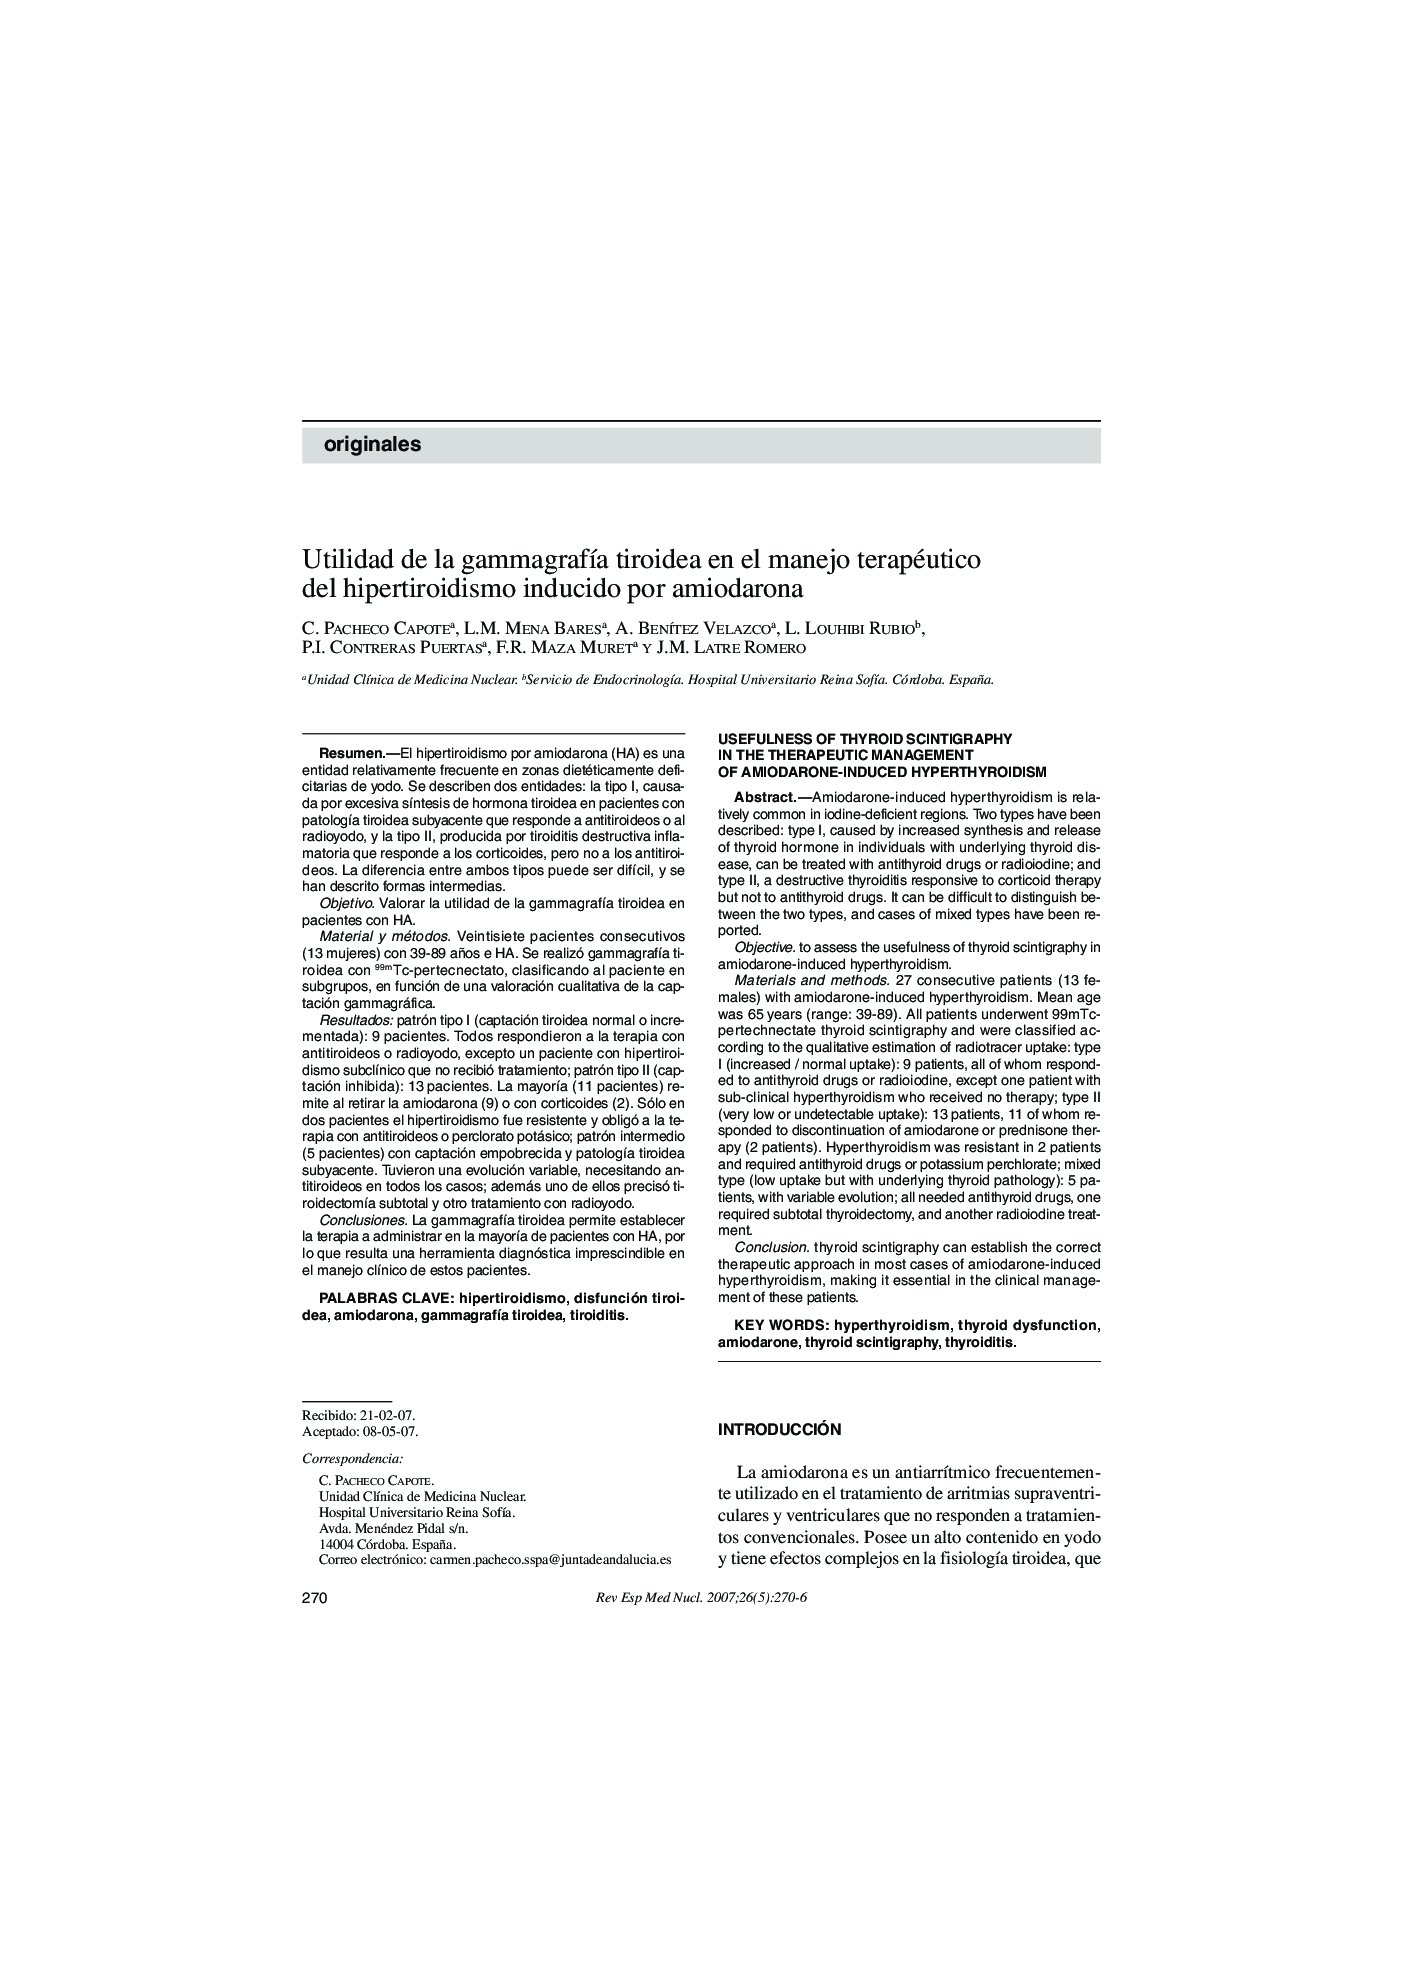 Utilidad de la gammagrafÃ­a tiroidea en el manejo terapéutico del hipertiroidismo inducido por amiodarona